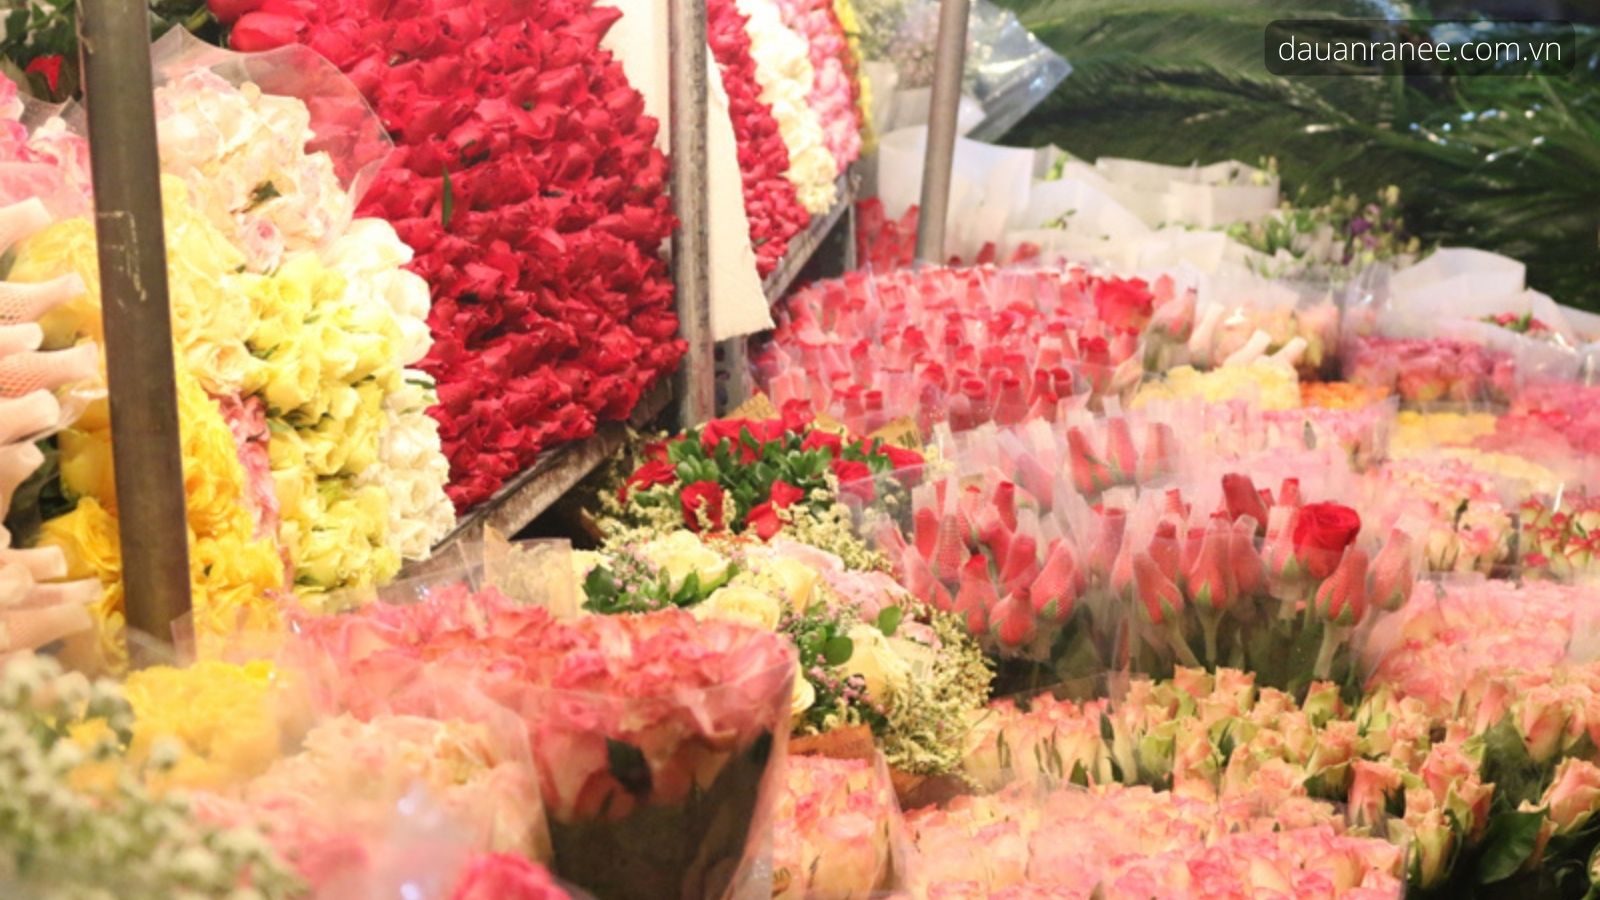 Hoa tươi ở Đà Lạt – Đặc trưng của Thành phố hoa